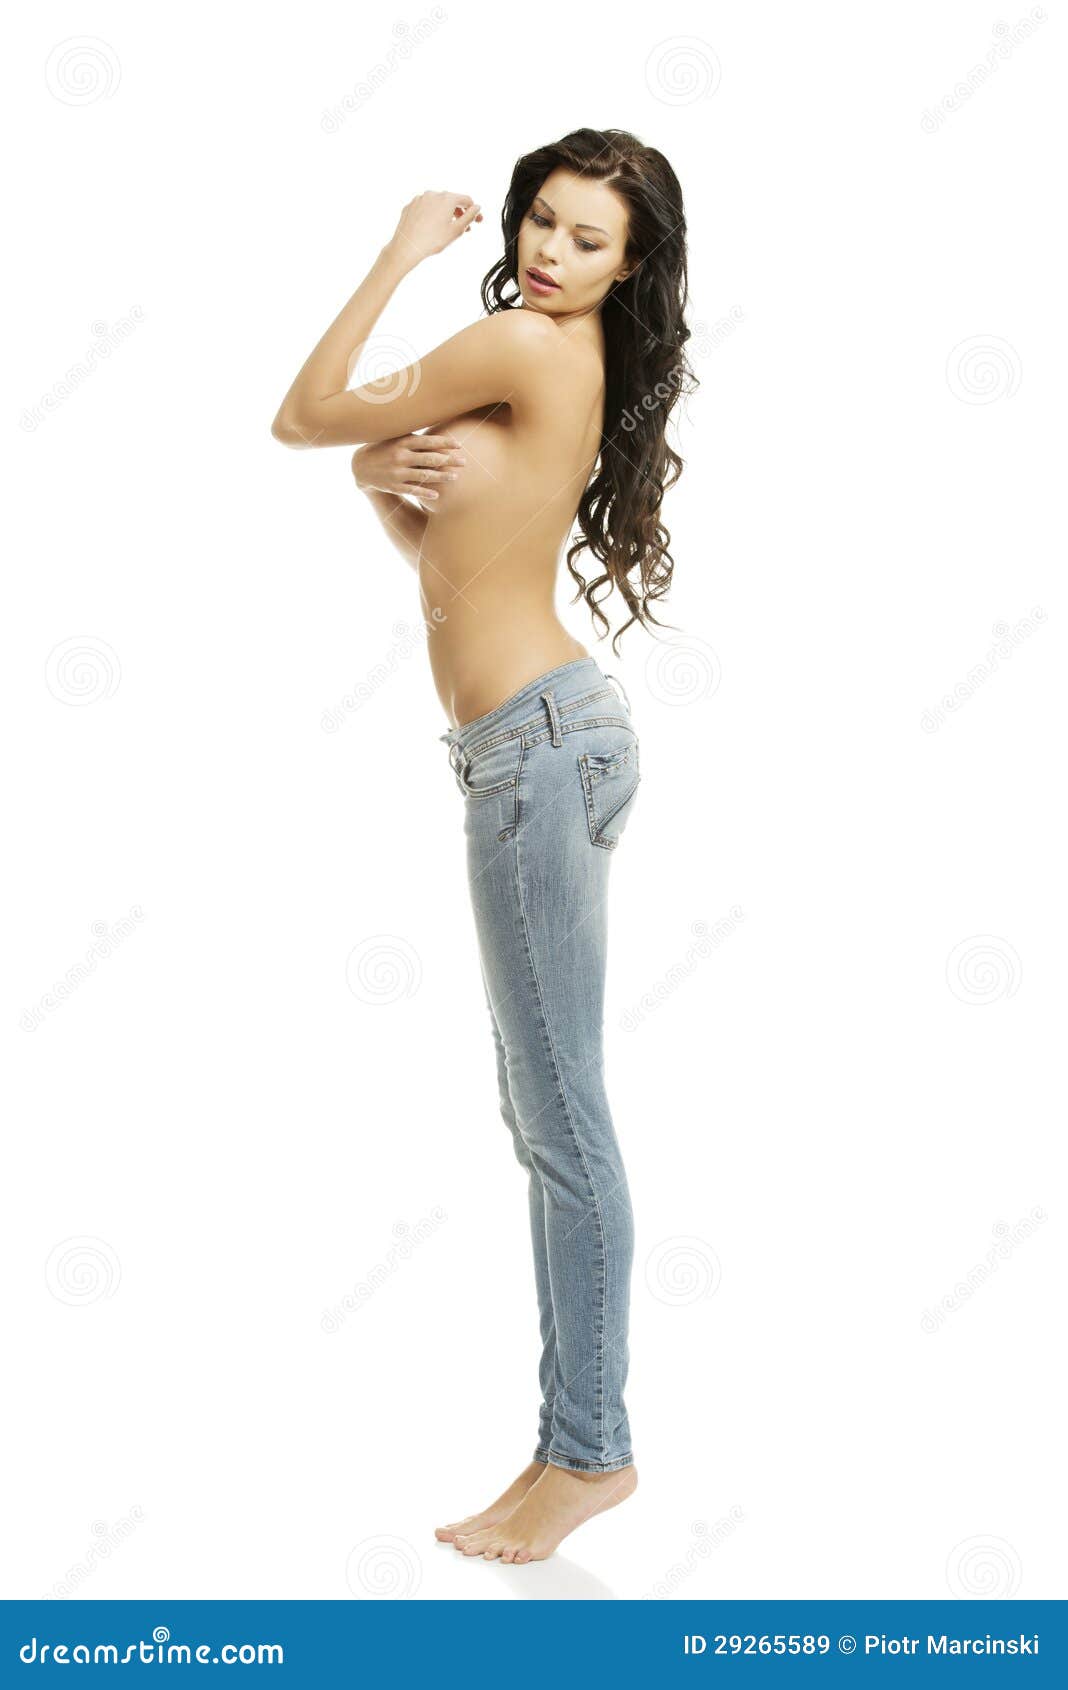 Beautiful women in blue jeans topless